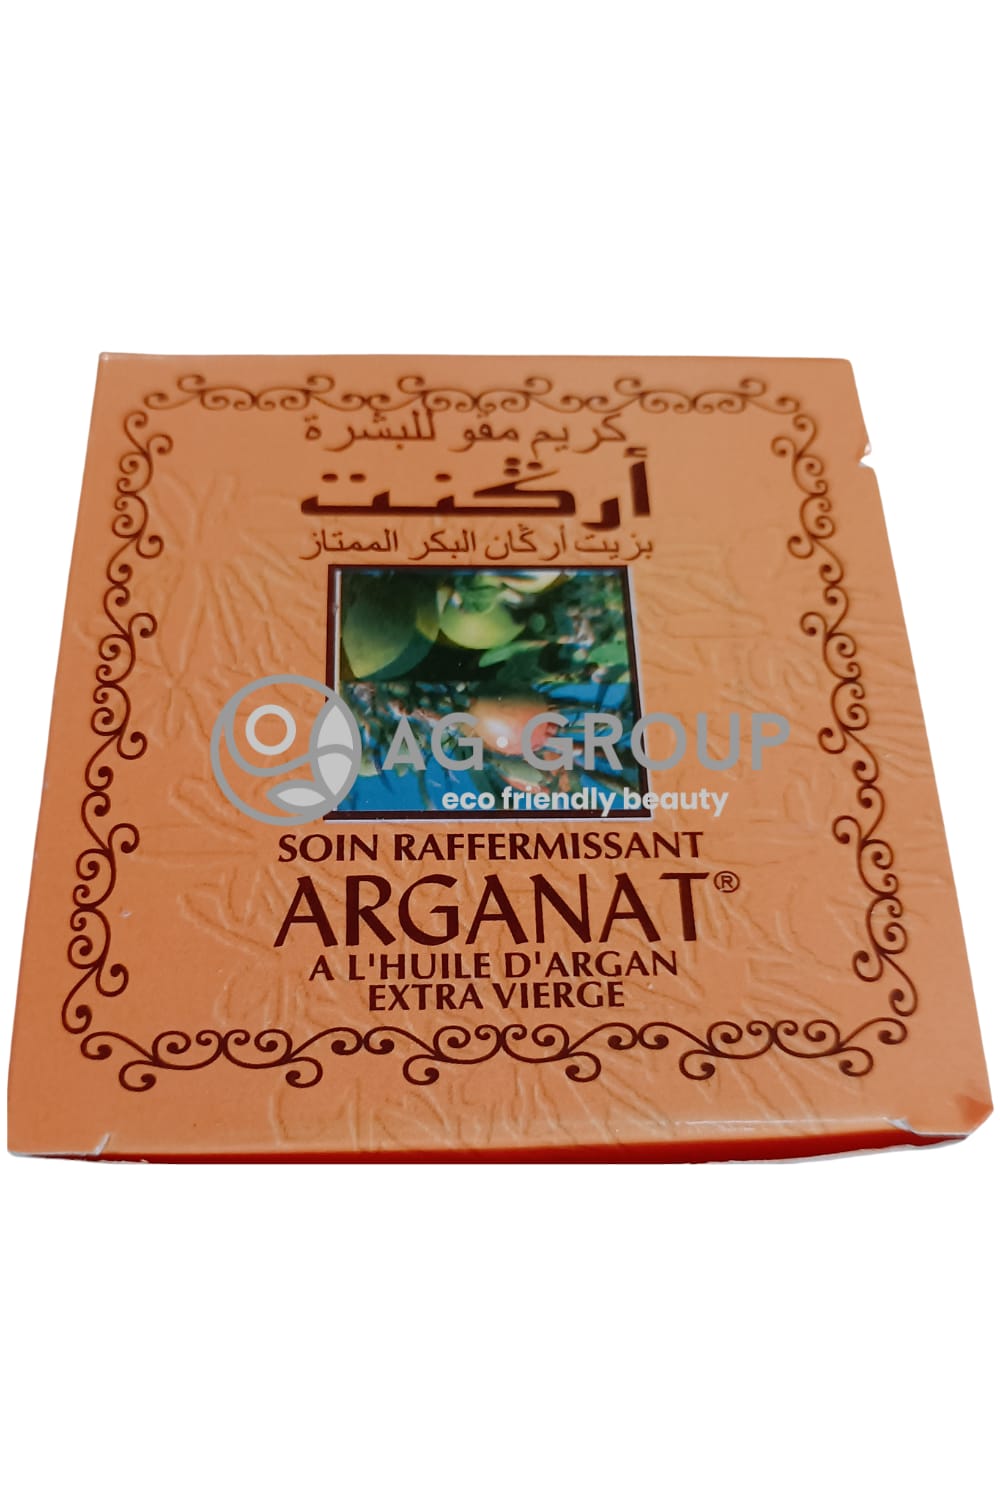 Featured image for “Crema viso olio extra vergine di argan”